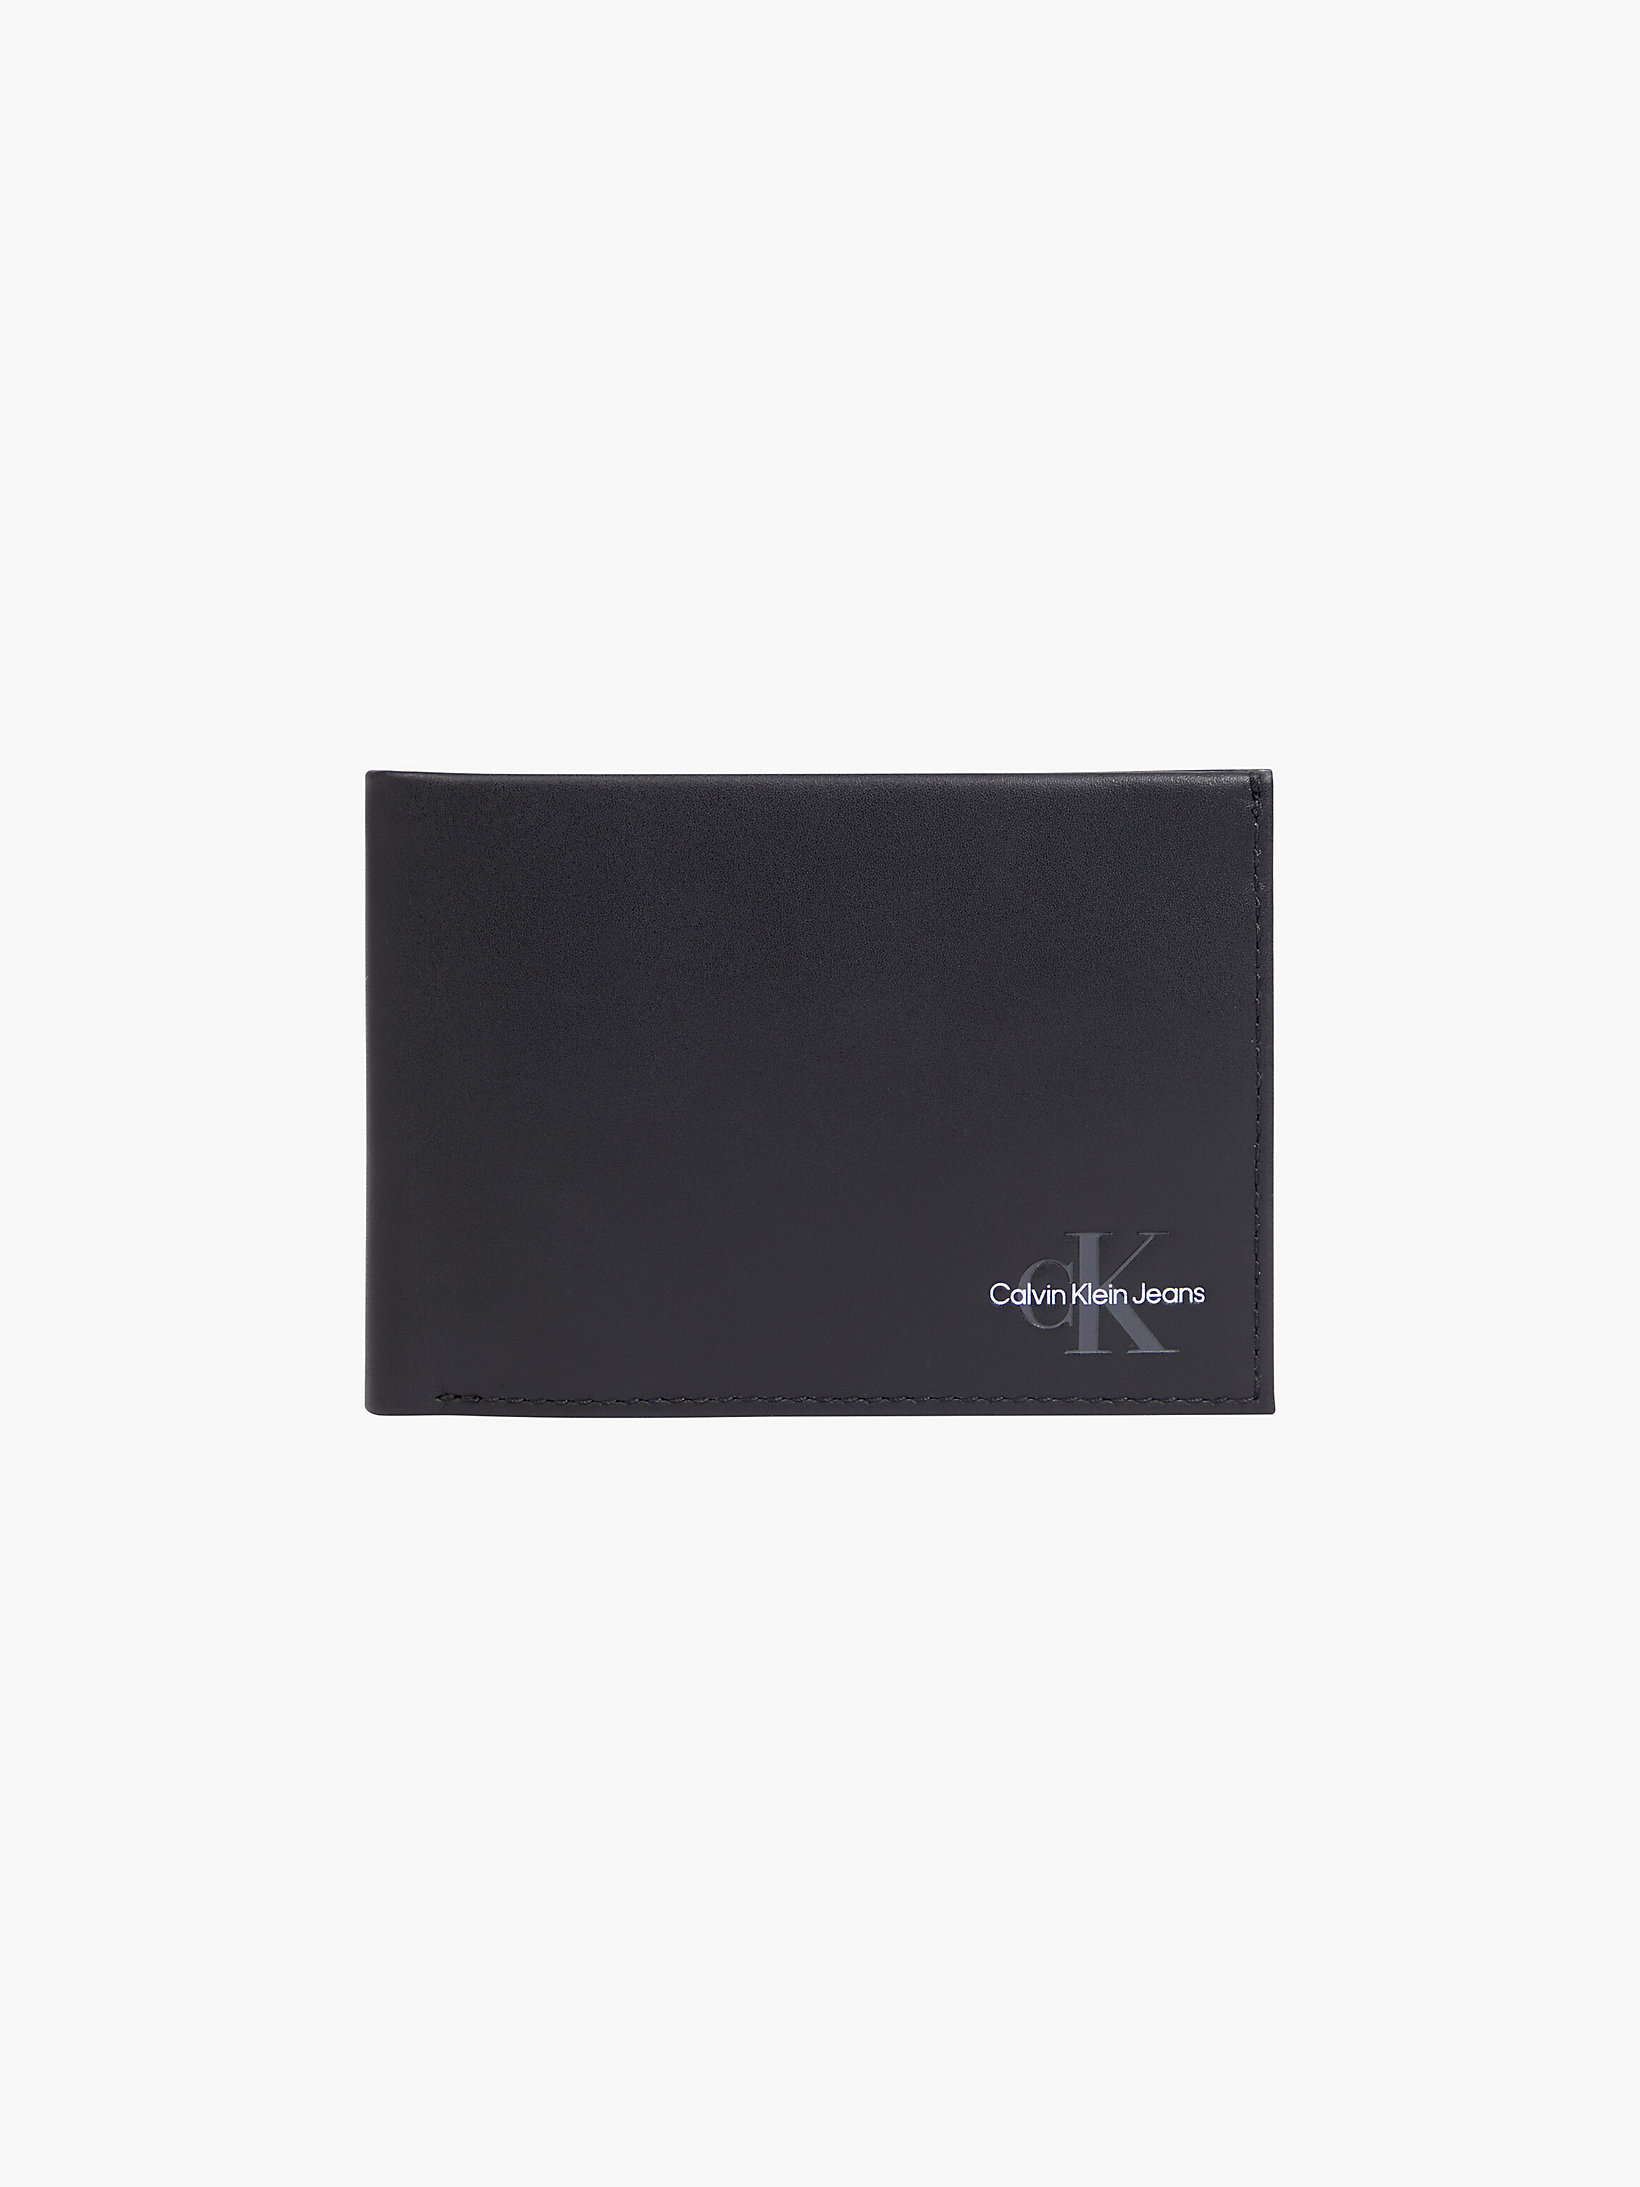 Black Leather Billfold Wallet undefined men Calvin Klein